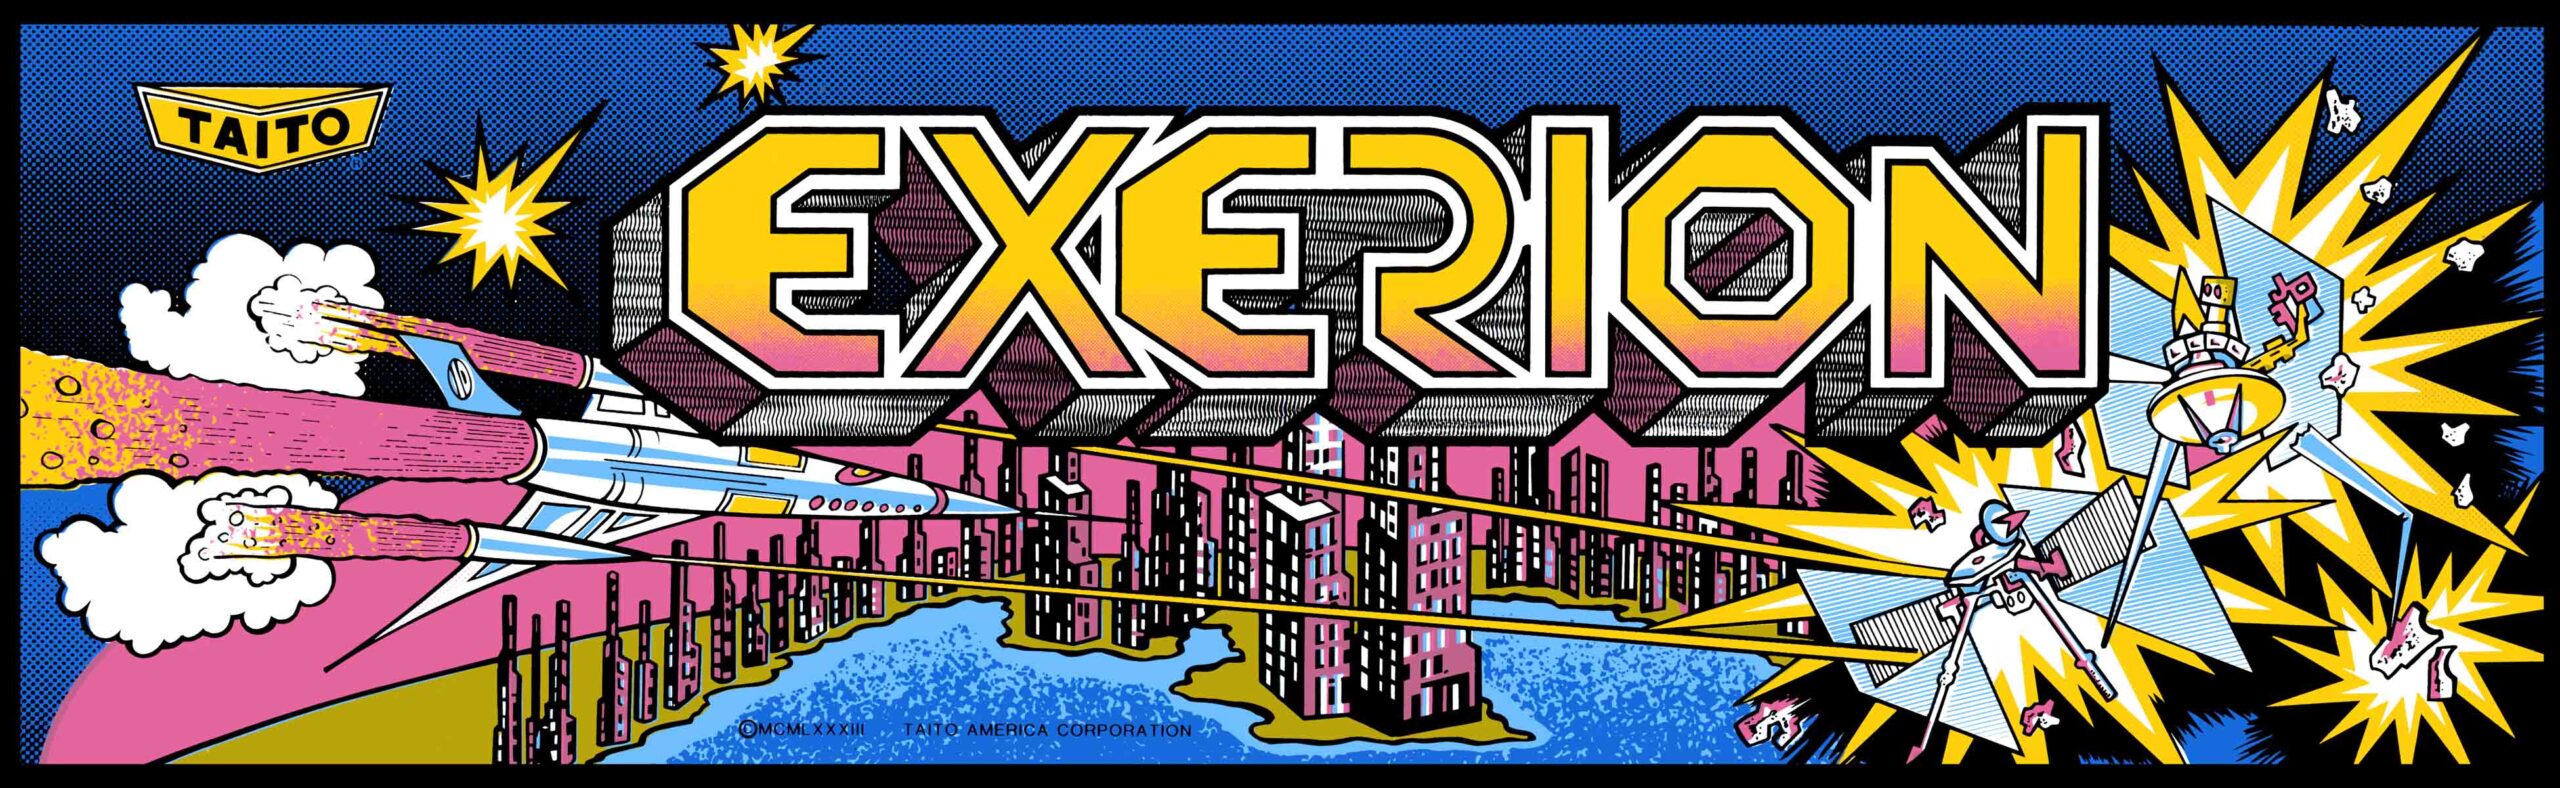 Zaxxon Arcade Marquee 26" x 8" 